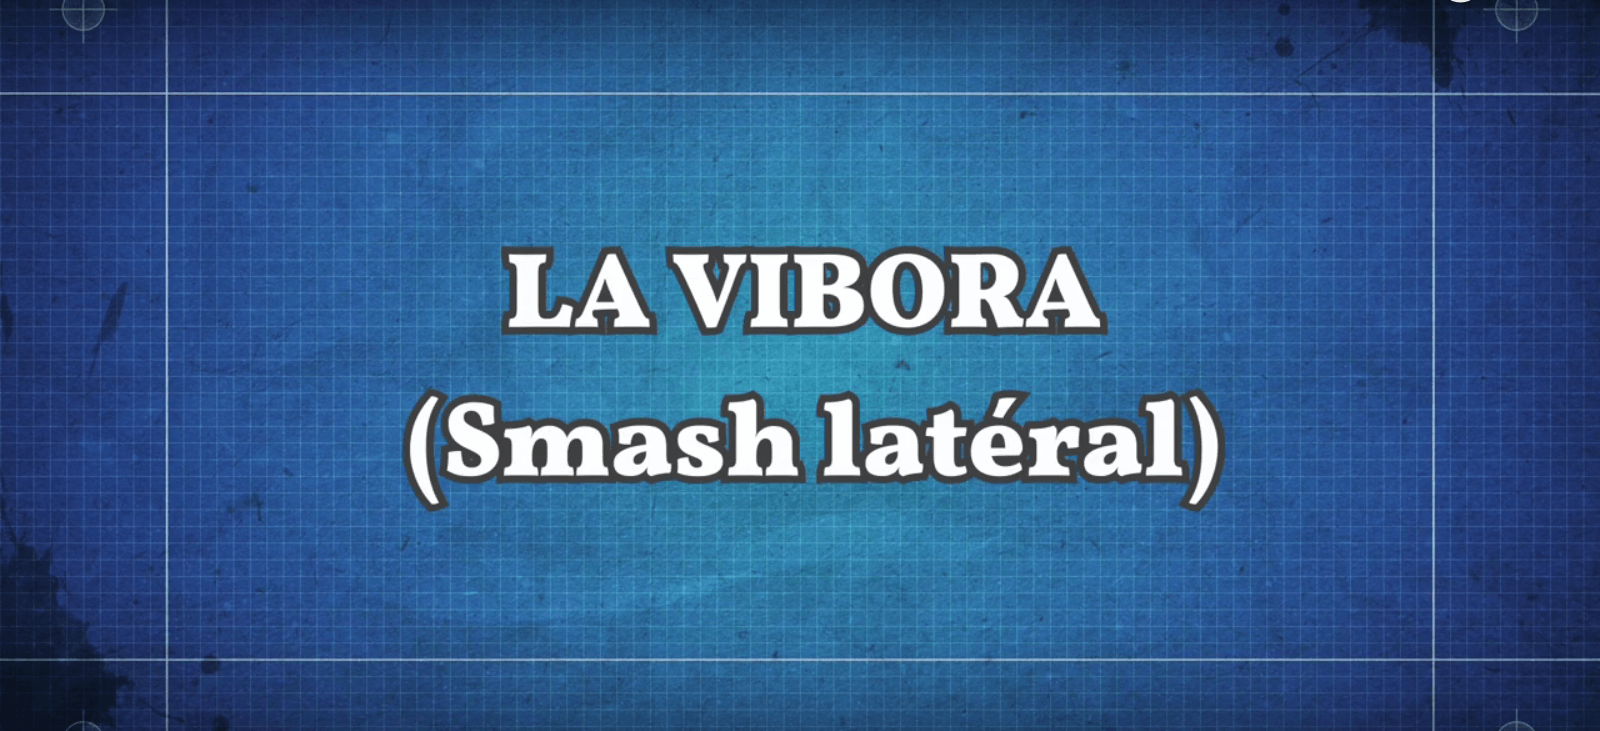 La vibora (Smash latéral)